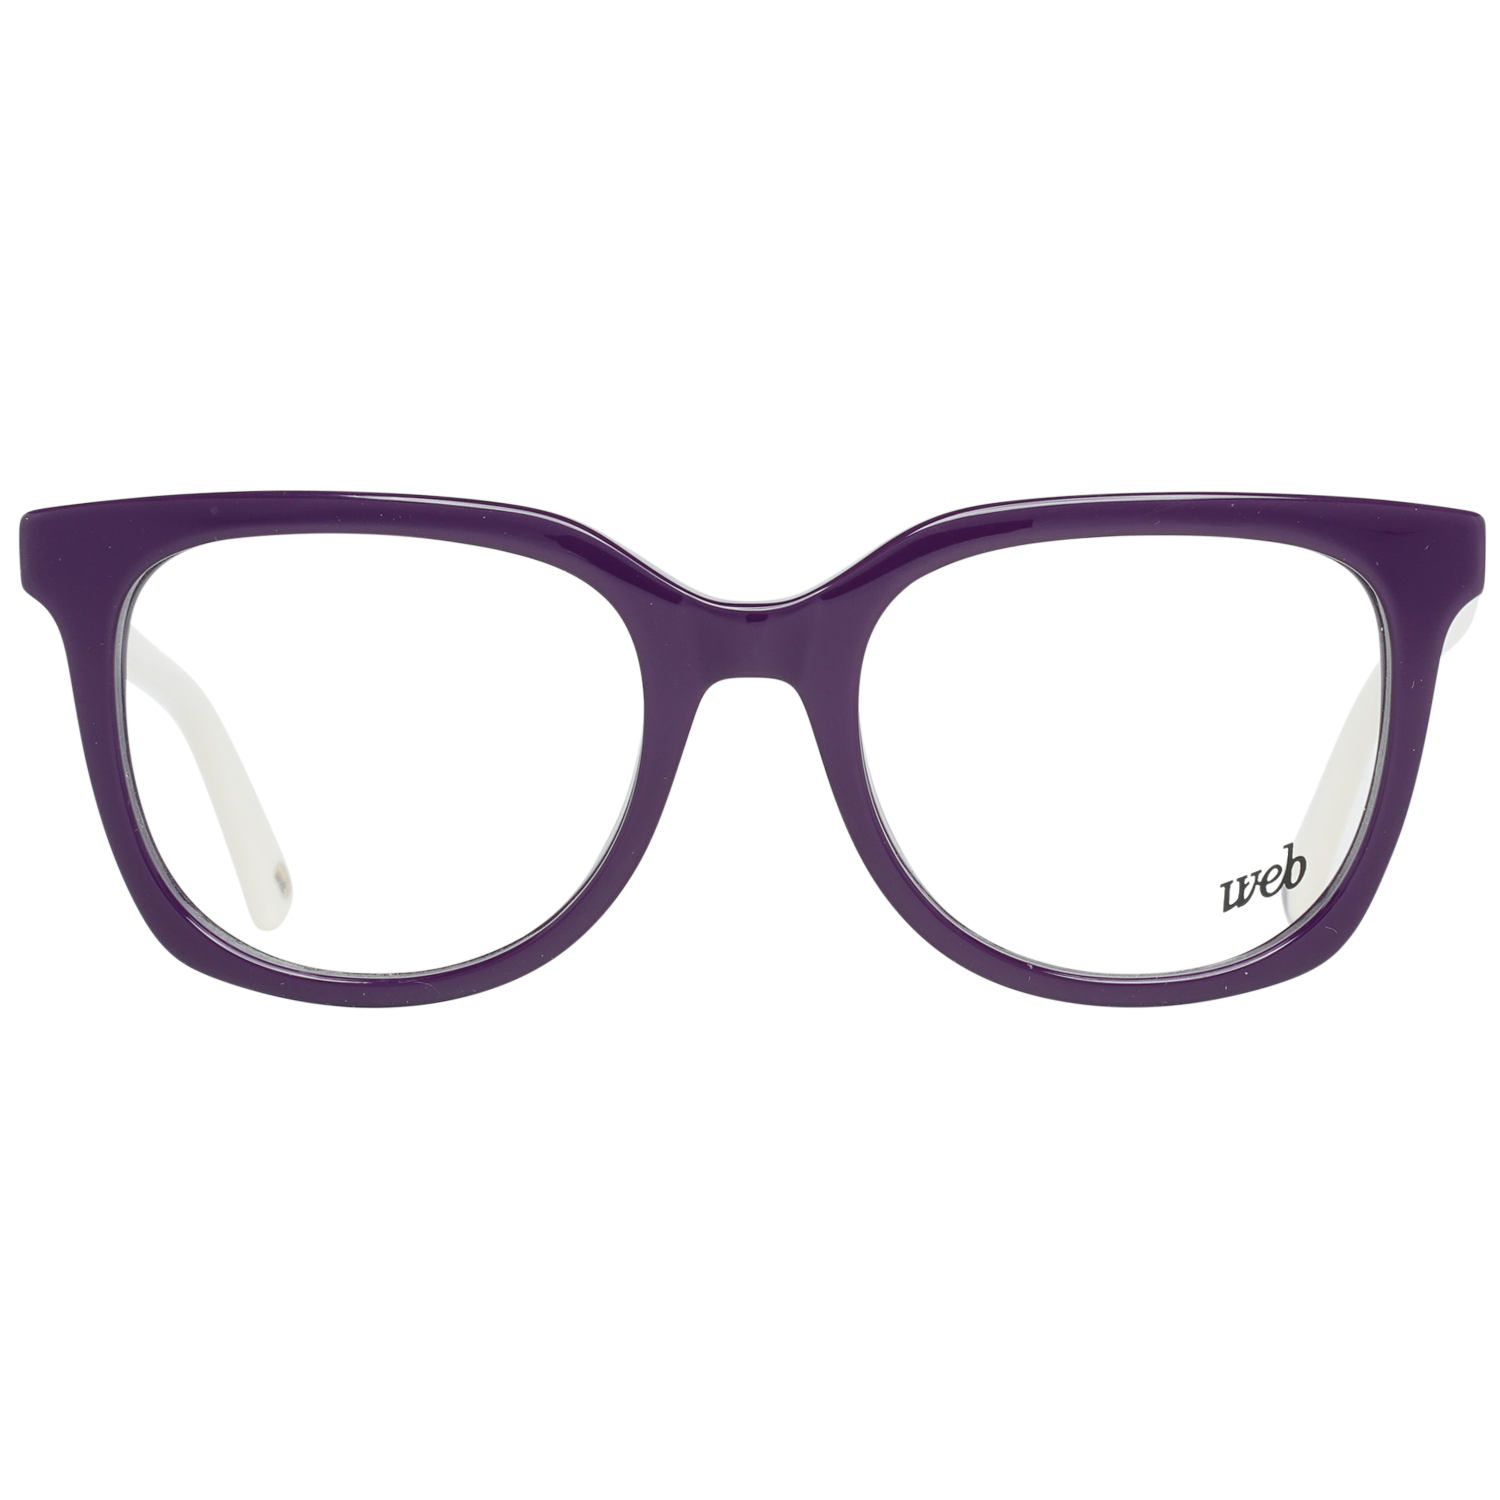 Web Frames Web Glasses Optical Frame WE5260 083 49 Eyeglasses Eyewear UK USA Australia 